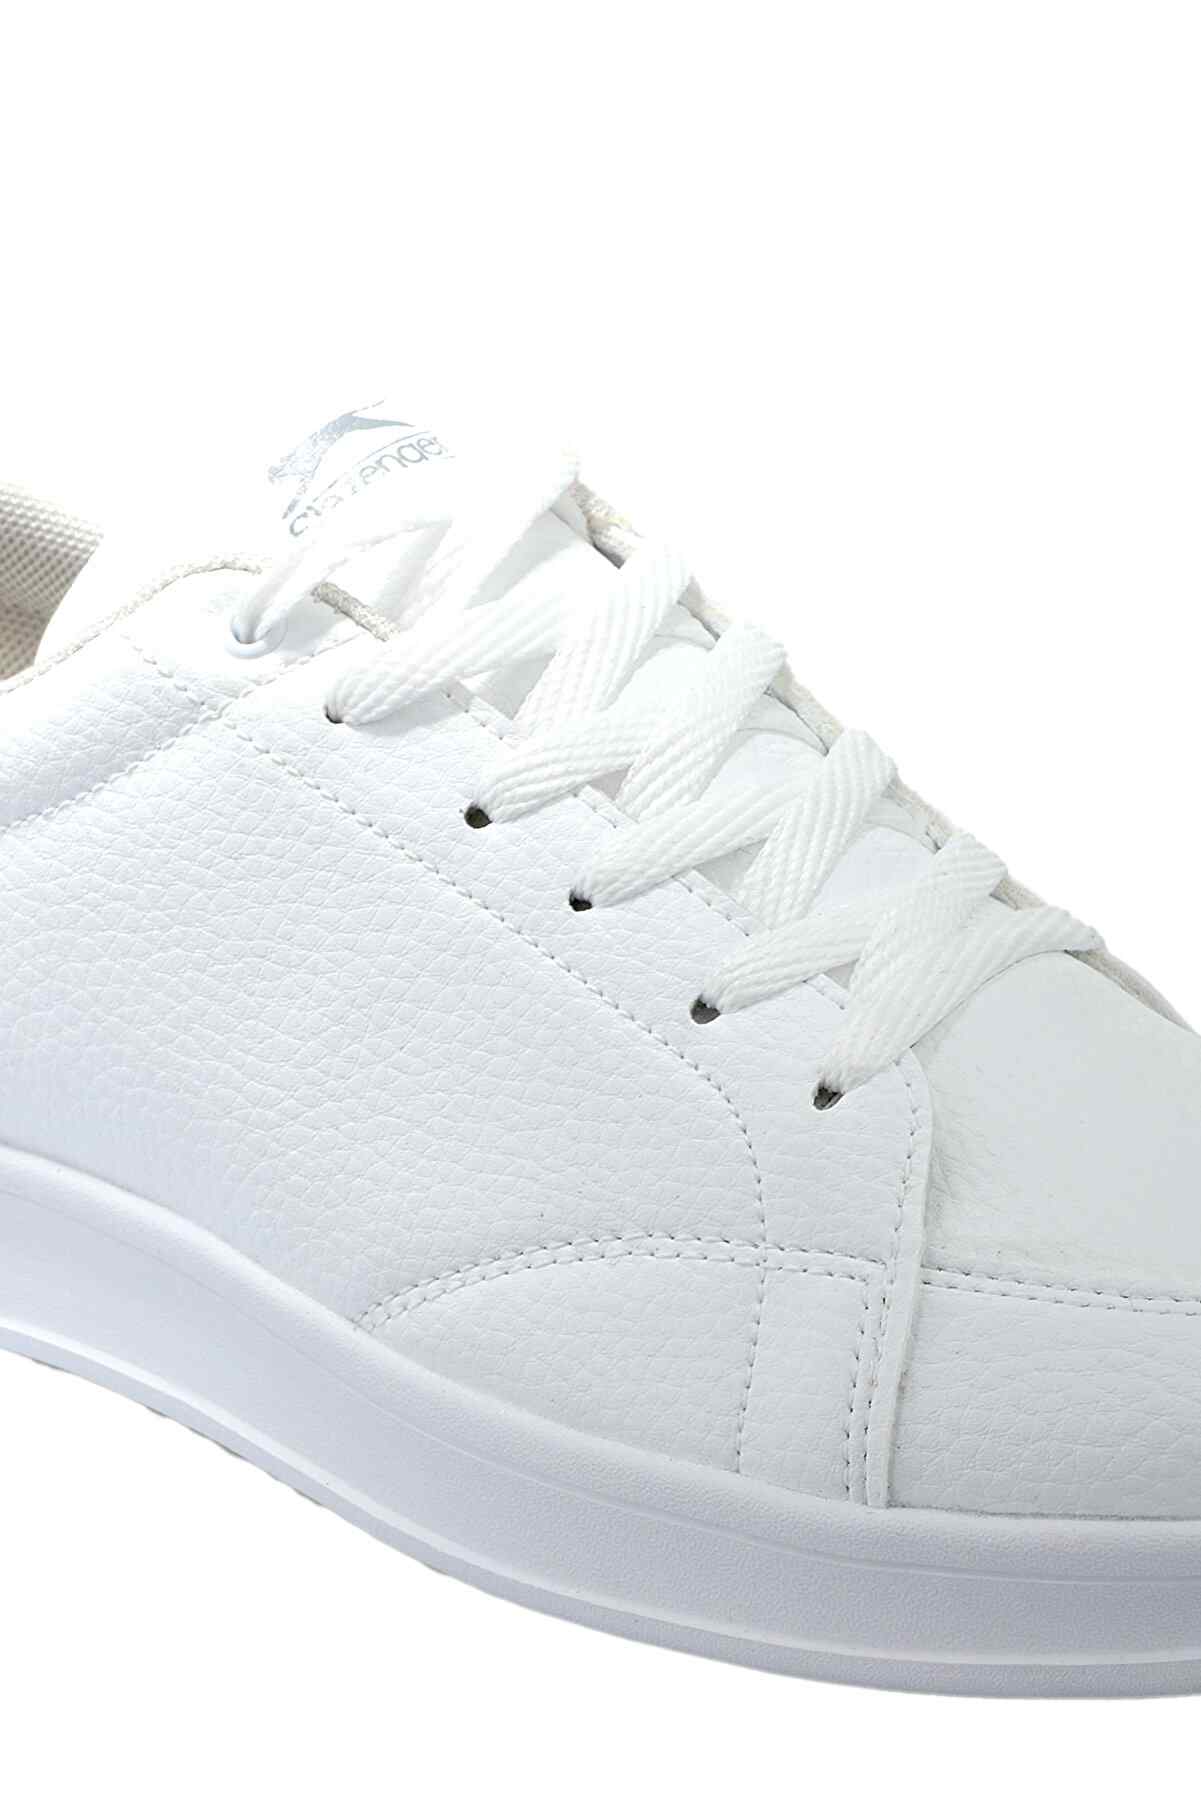 Slazenger Ola Sneaker Erkek Ayakkabı Beyaz